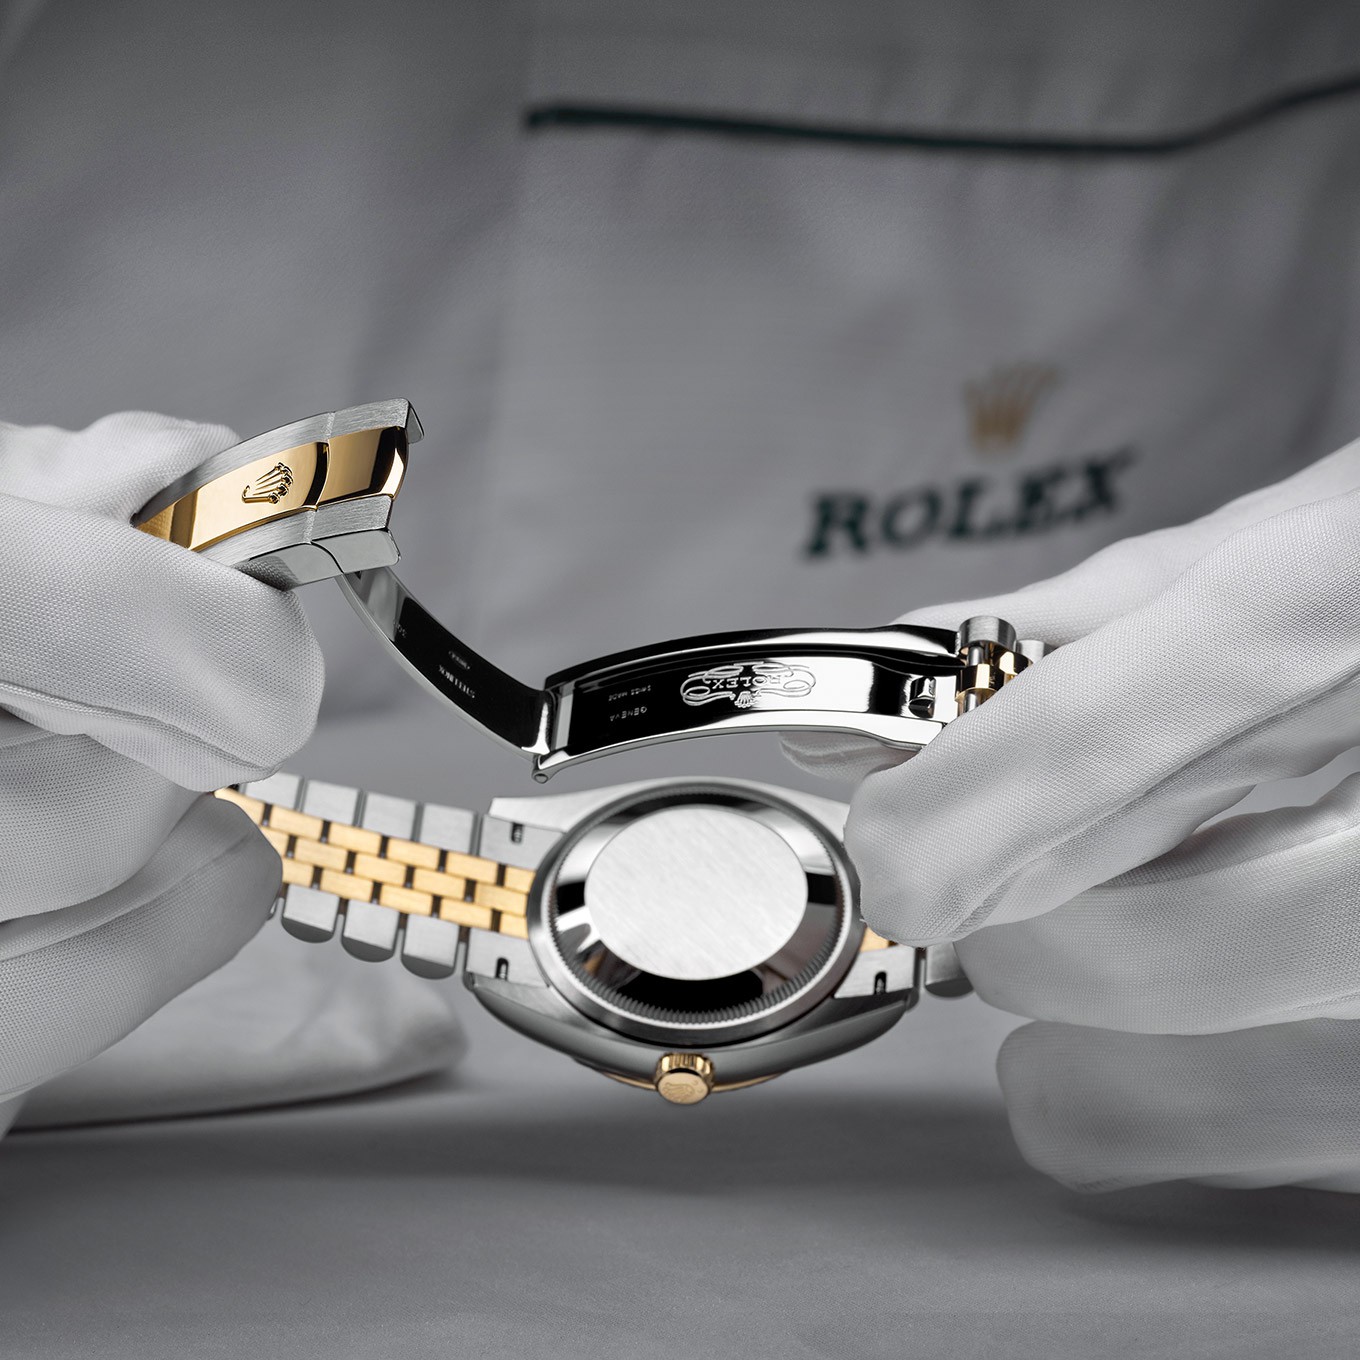 檢修您的勞力士腕錶 | 金生儀鐘錶 King's Sign Watch-通過金生儀鐘錶檢修您的勞力士腕錶